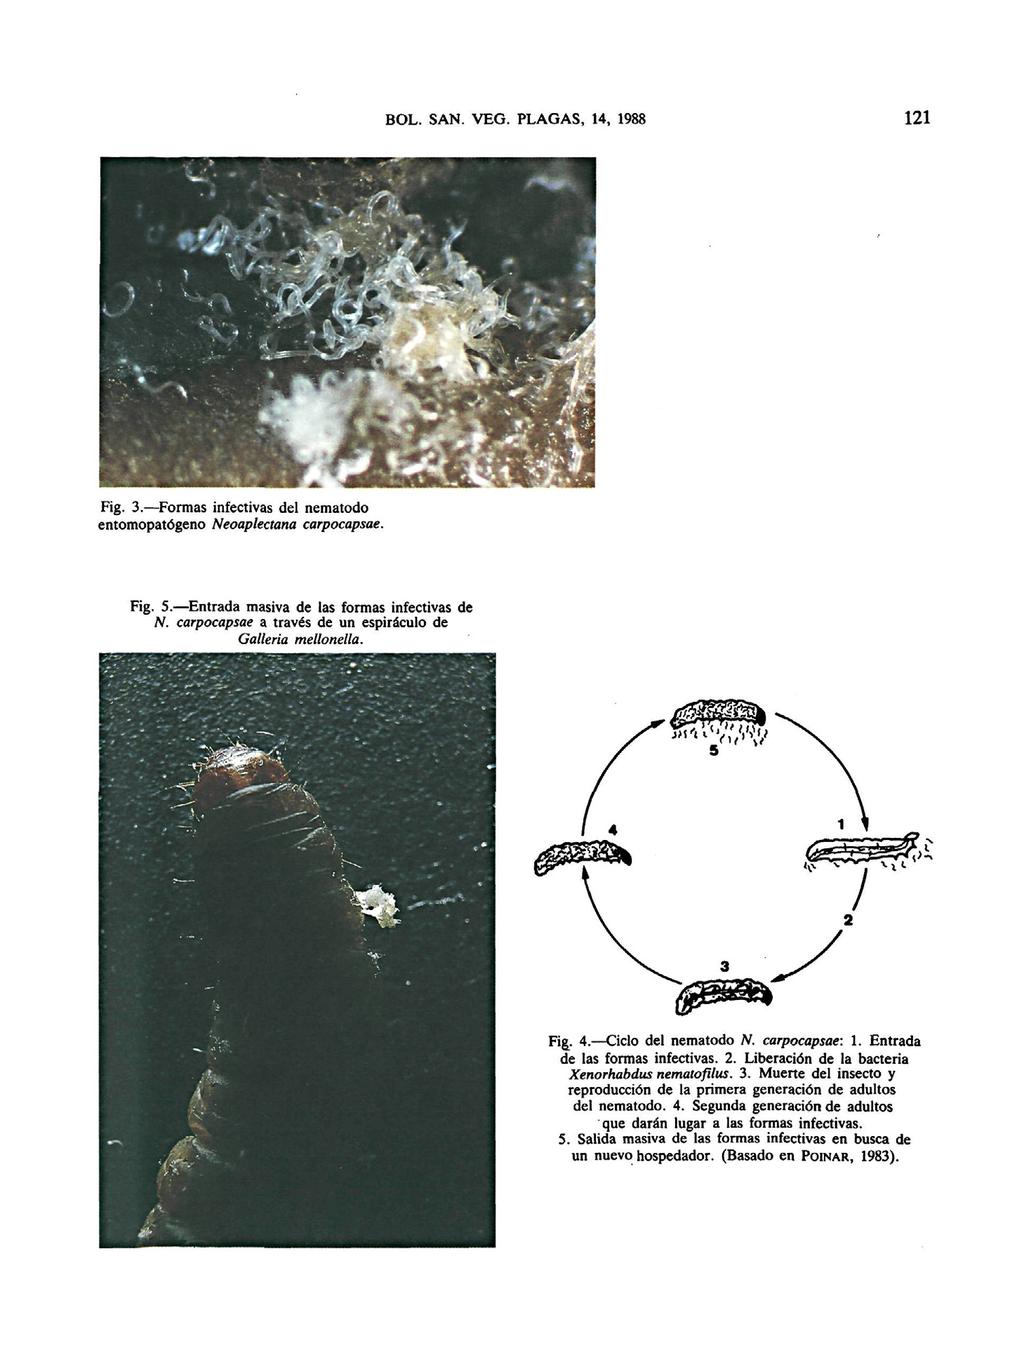 BOL. SAN. VEG. PLAGAS, 14, 1988 121 Fig. 3. Formas infectivas del nematodo entomopatógeno Neoaplectana carpocapsae. Fig. 5. Entrada masiva de las formas infectivas de N.